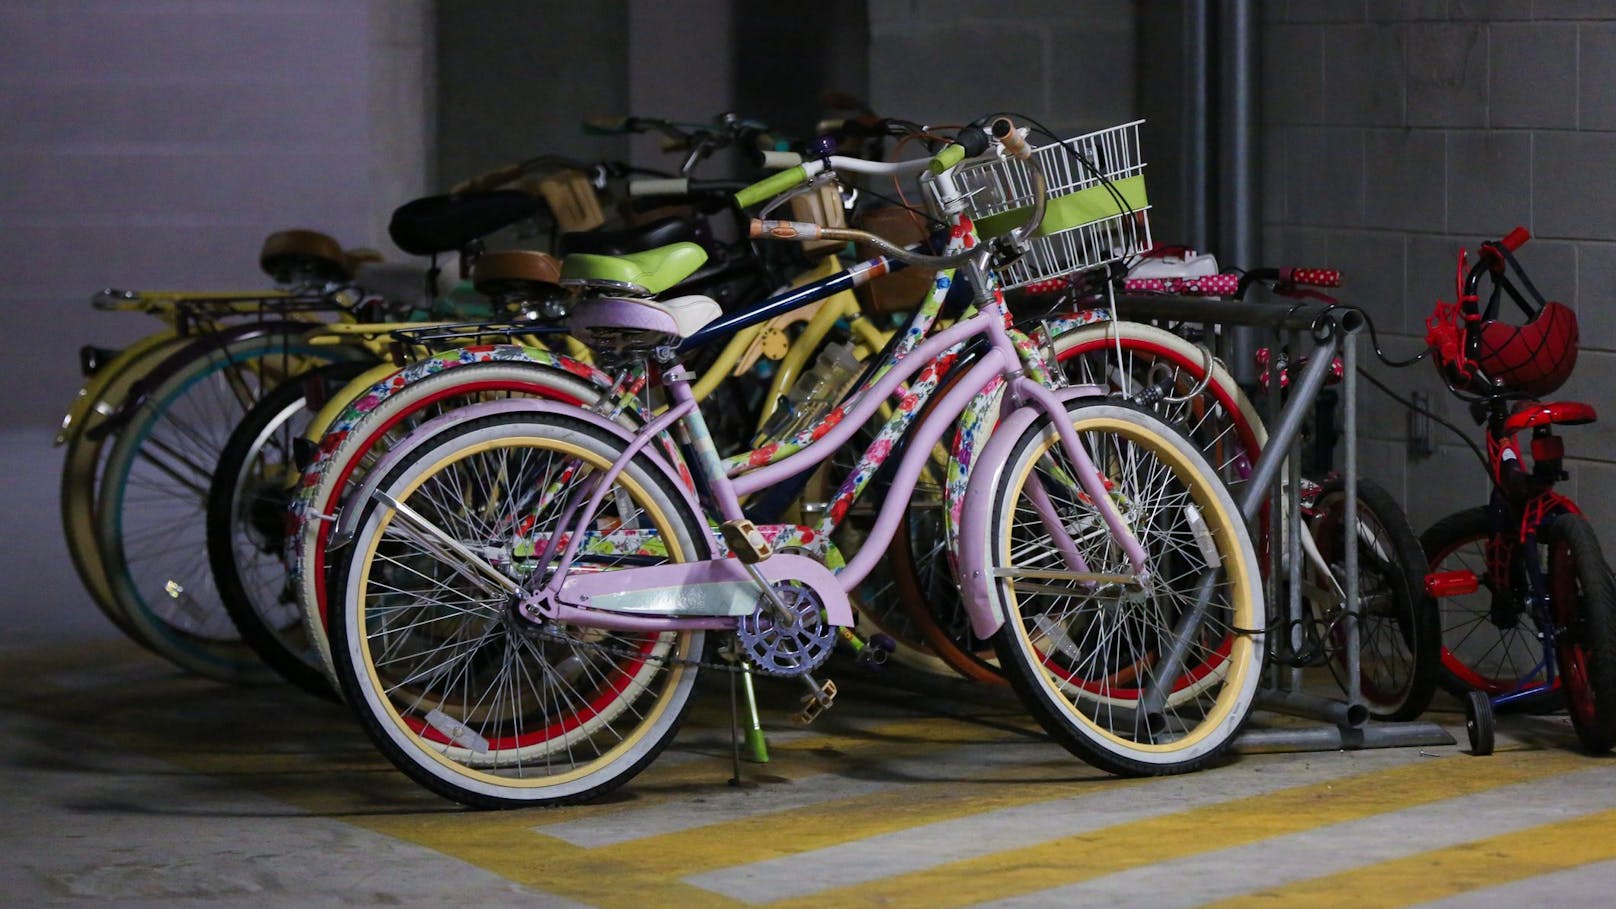 Kriminelle gehen in Fahrradkellern auf Diebestour